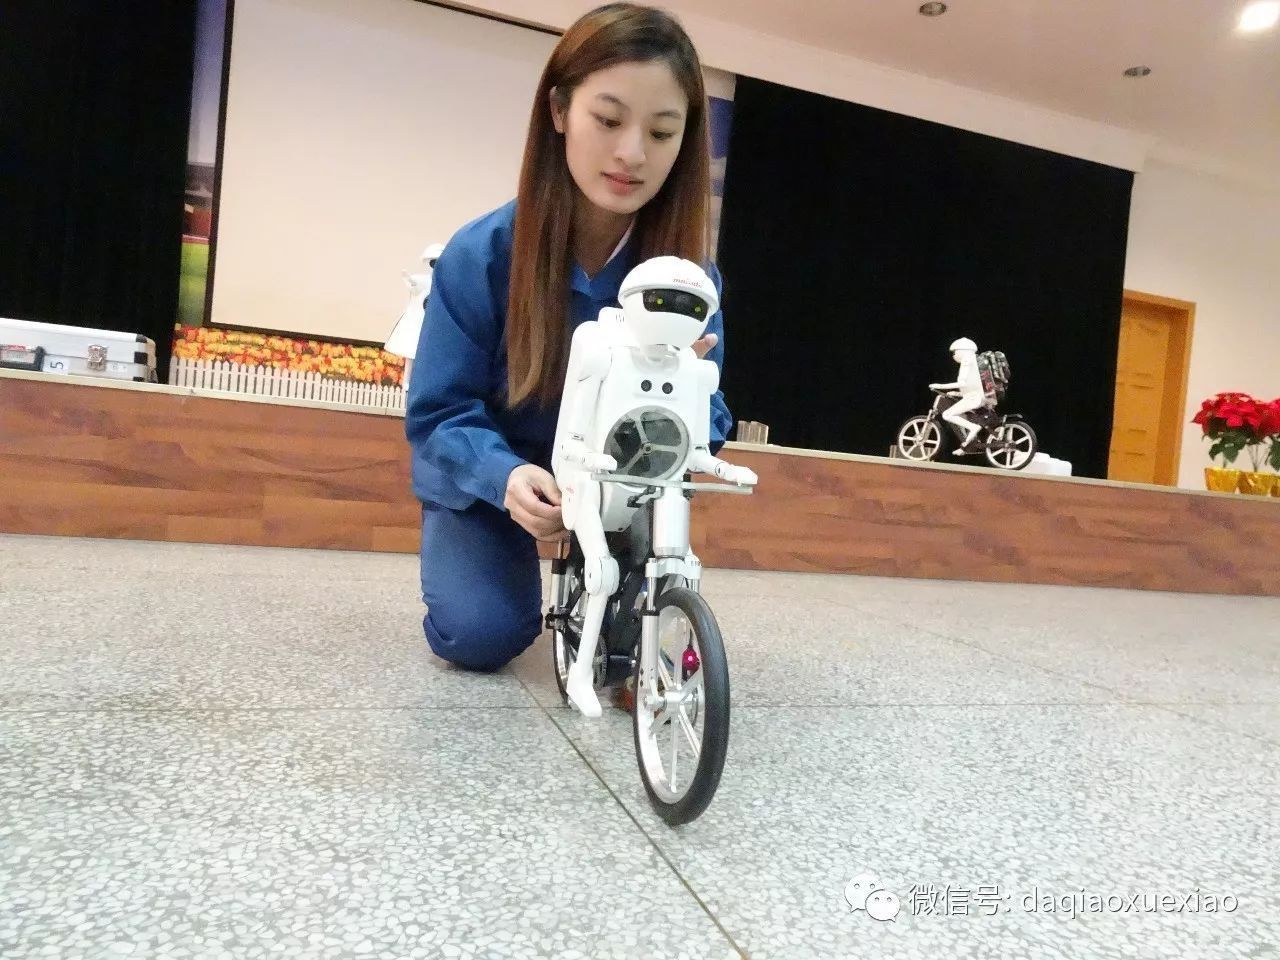 Robots ride into Wuxi school